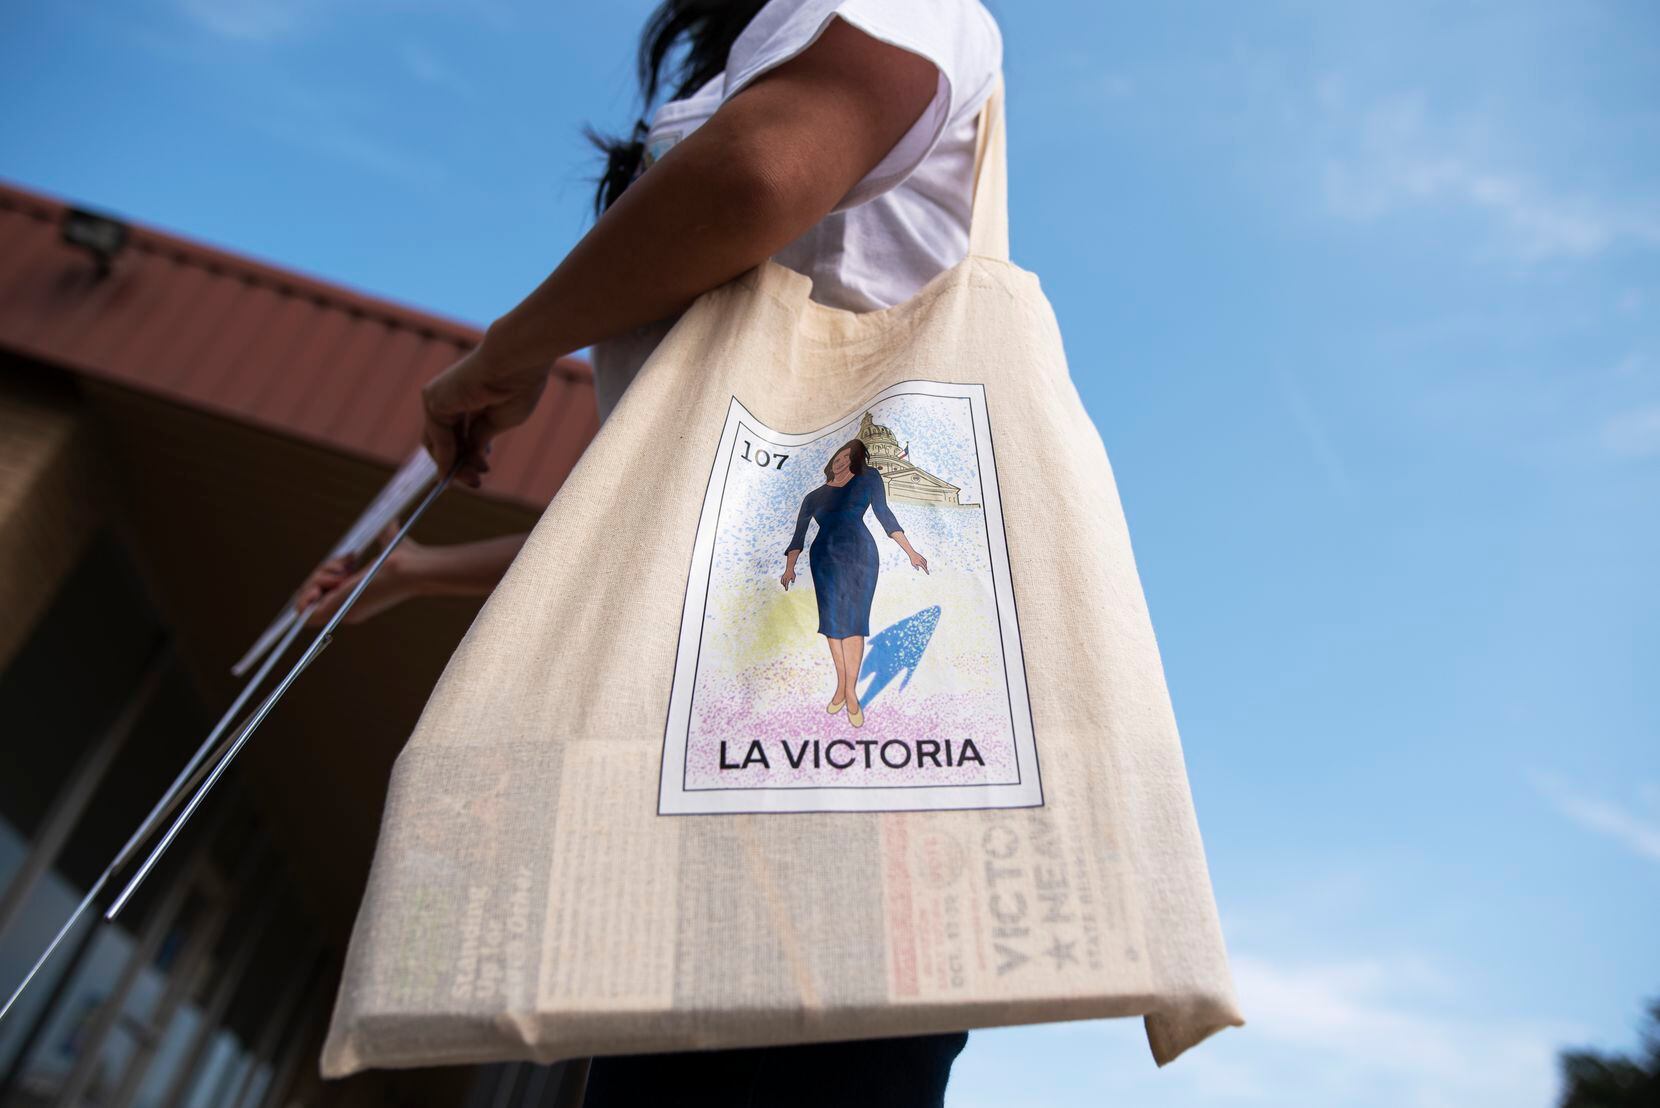 En la pasada campaña electoral, Victoria Neave llevaba una bolsa con una imagen de ella inspirada en el juego "Lotería".